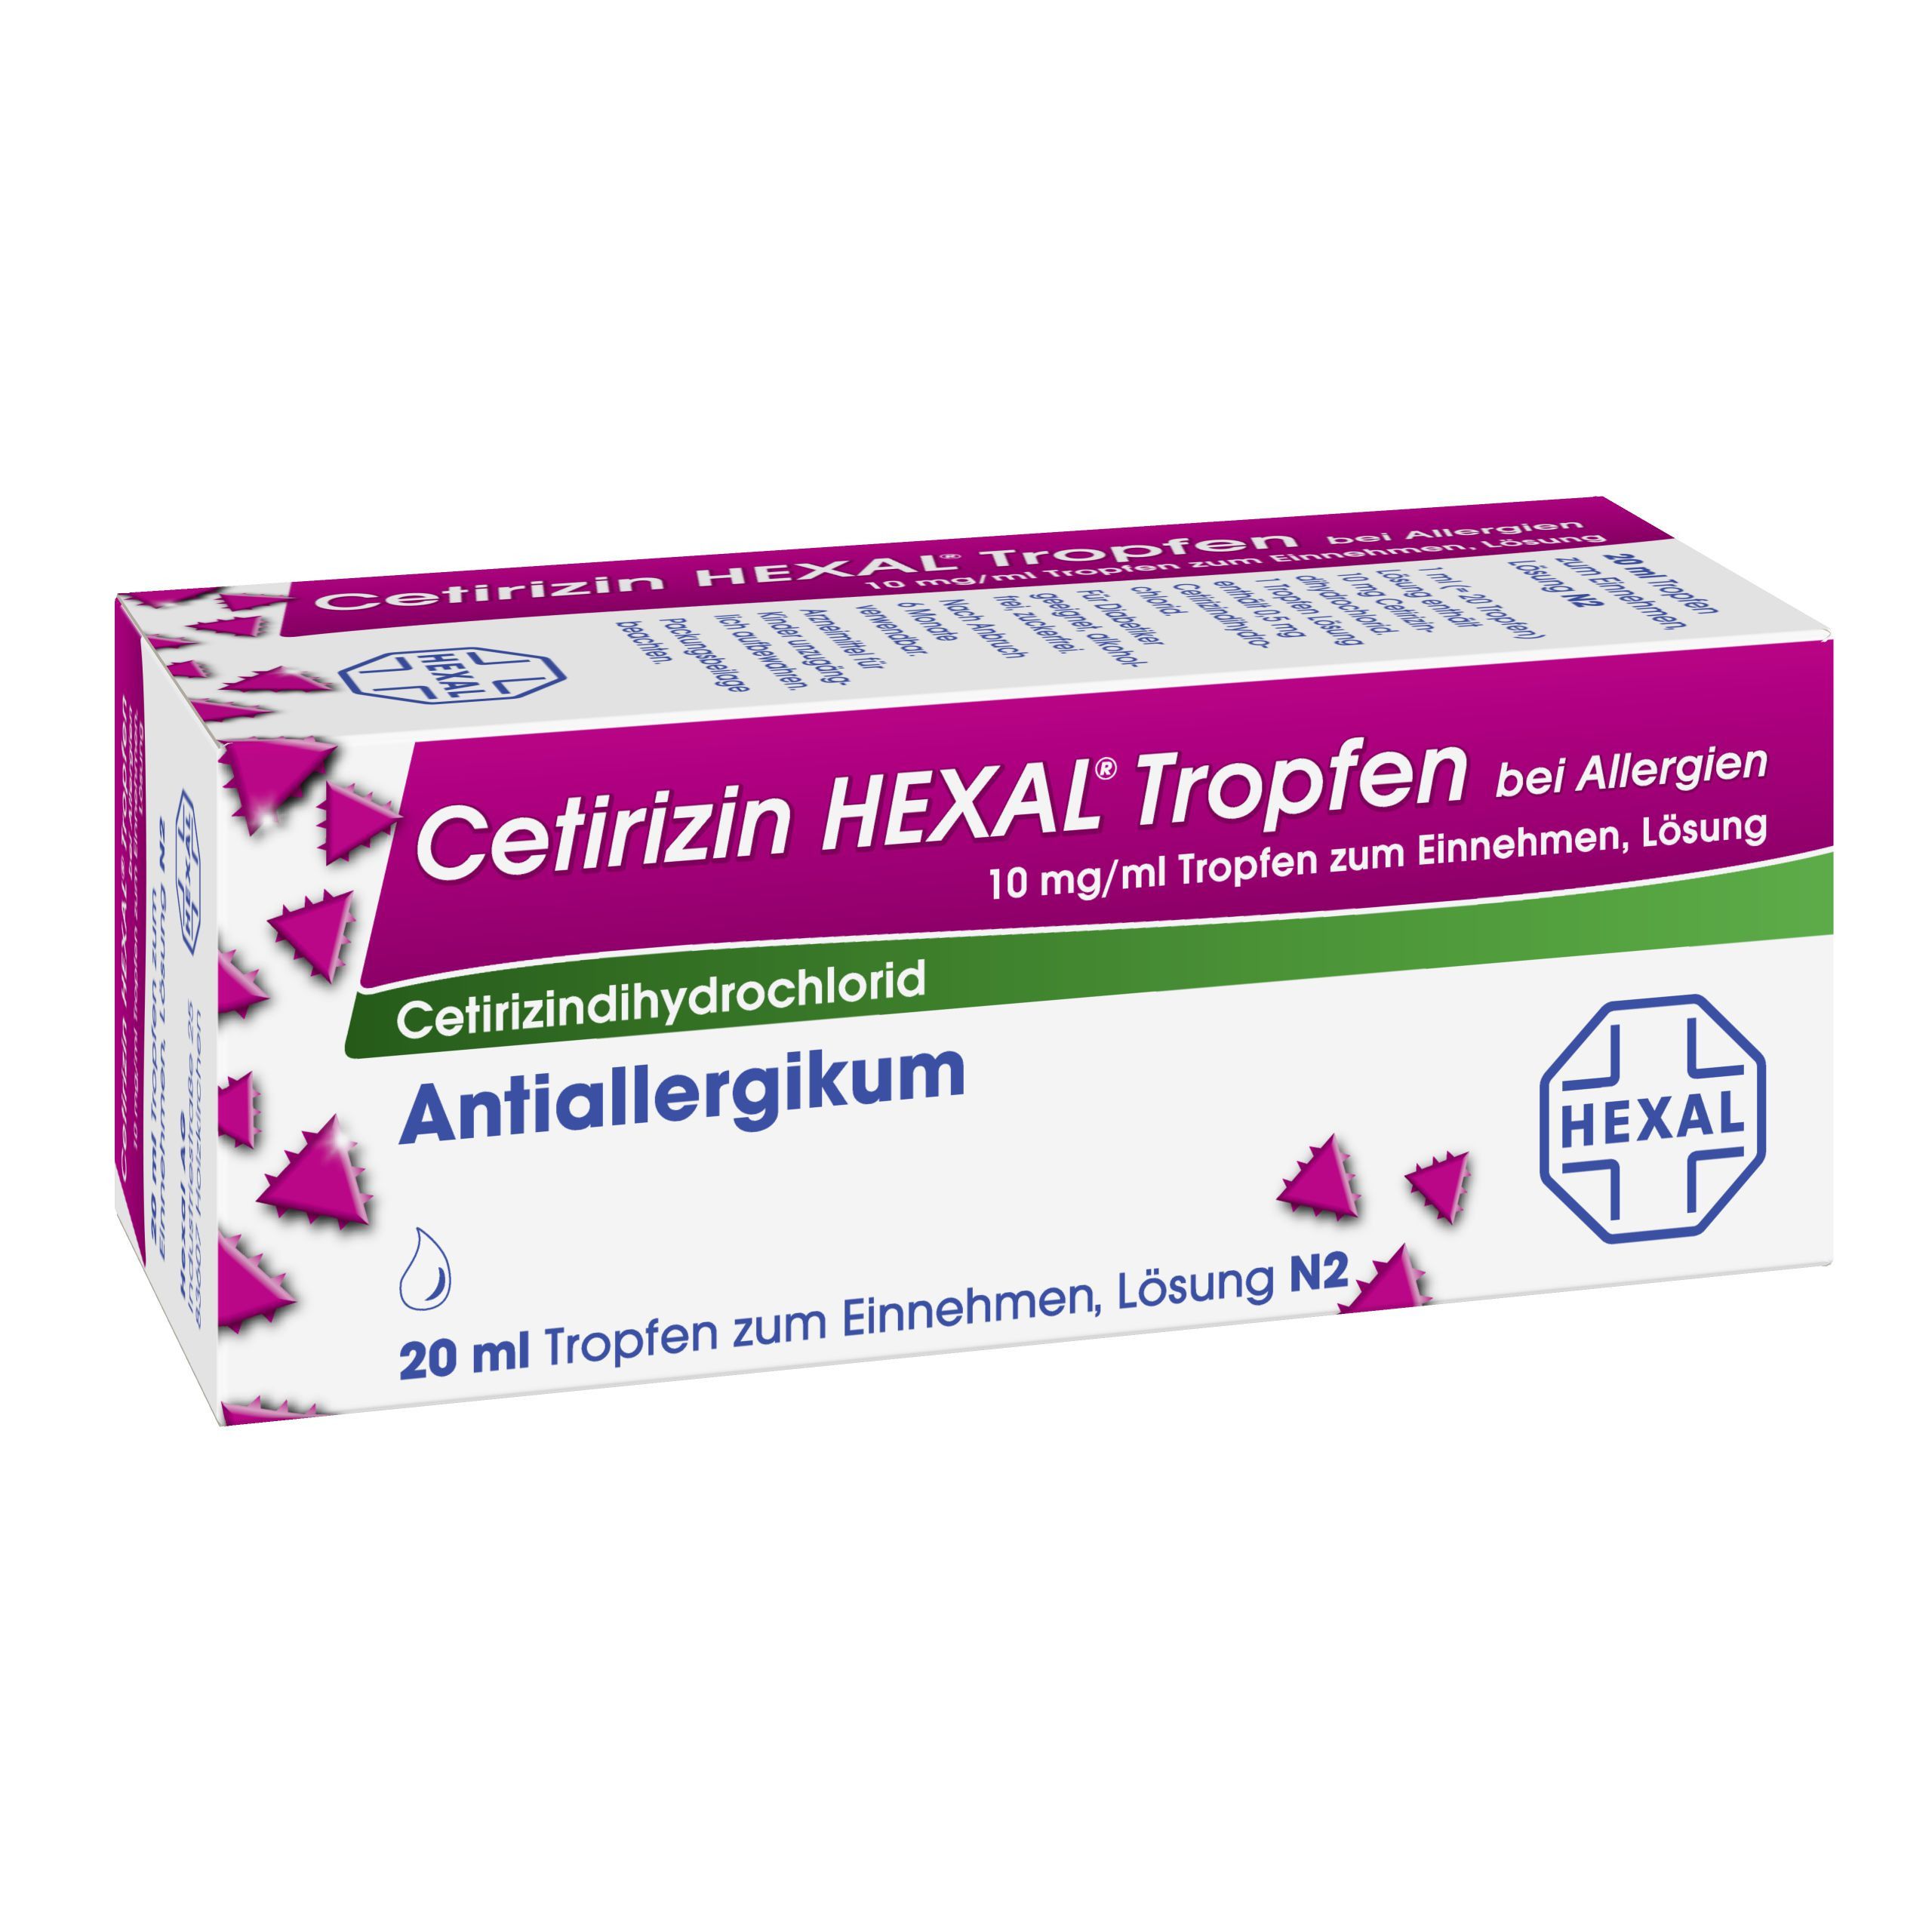 Cetirizin HEXAL® Tropfen bei Allergien 10 mg/ml